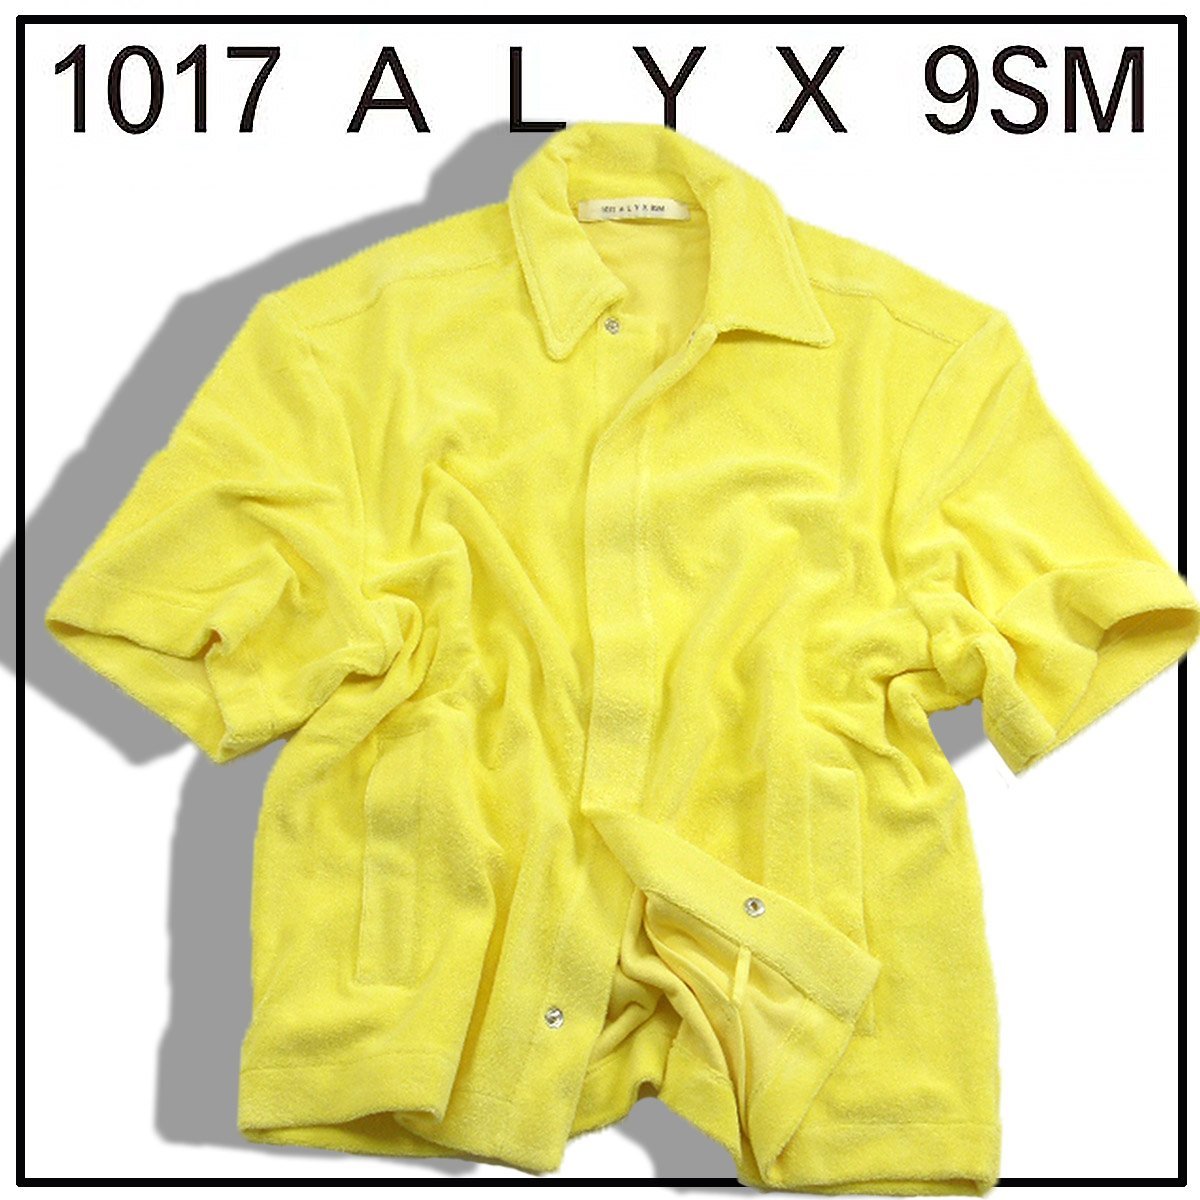 新品 1017 ALYX 9SM 【アリクス】 パイル地 バック刺繍 半袖シャツ M イエロー ★352730 羽織り